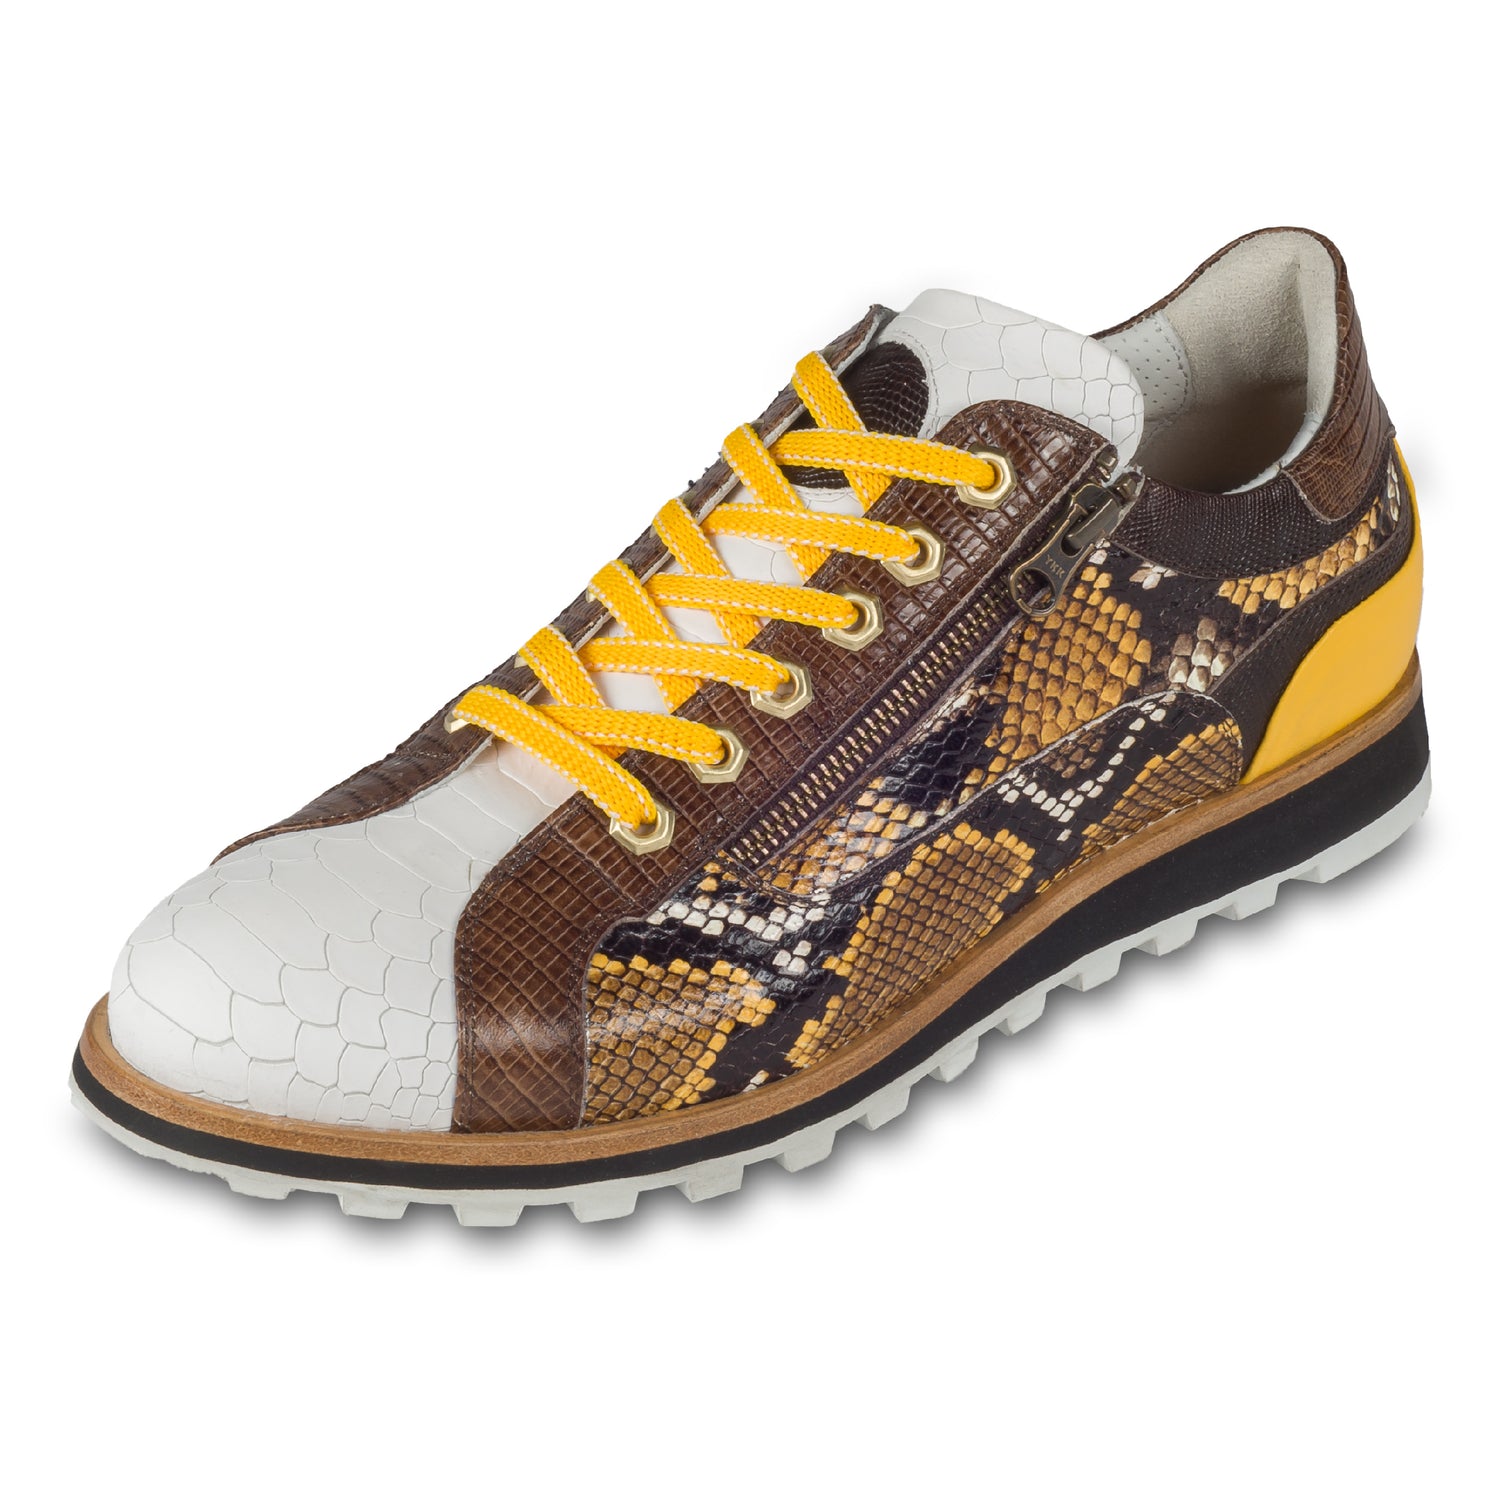 Lorenzi Herren Leder-Sneaker in weiß / gelb / braun mit Schlangen-Prägung. Handgefertigt. Schräge Ansicht linker Schuh. Gelbe Schnürsenkel.